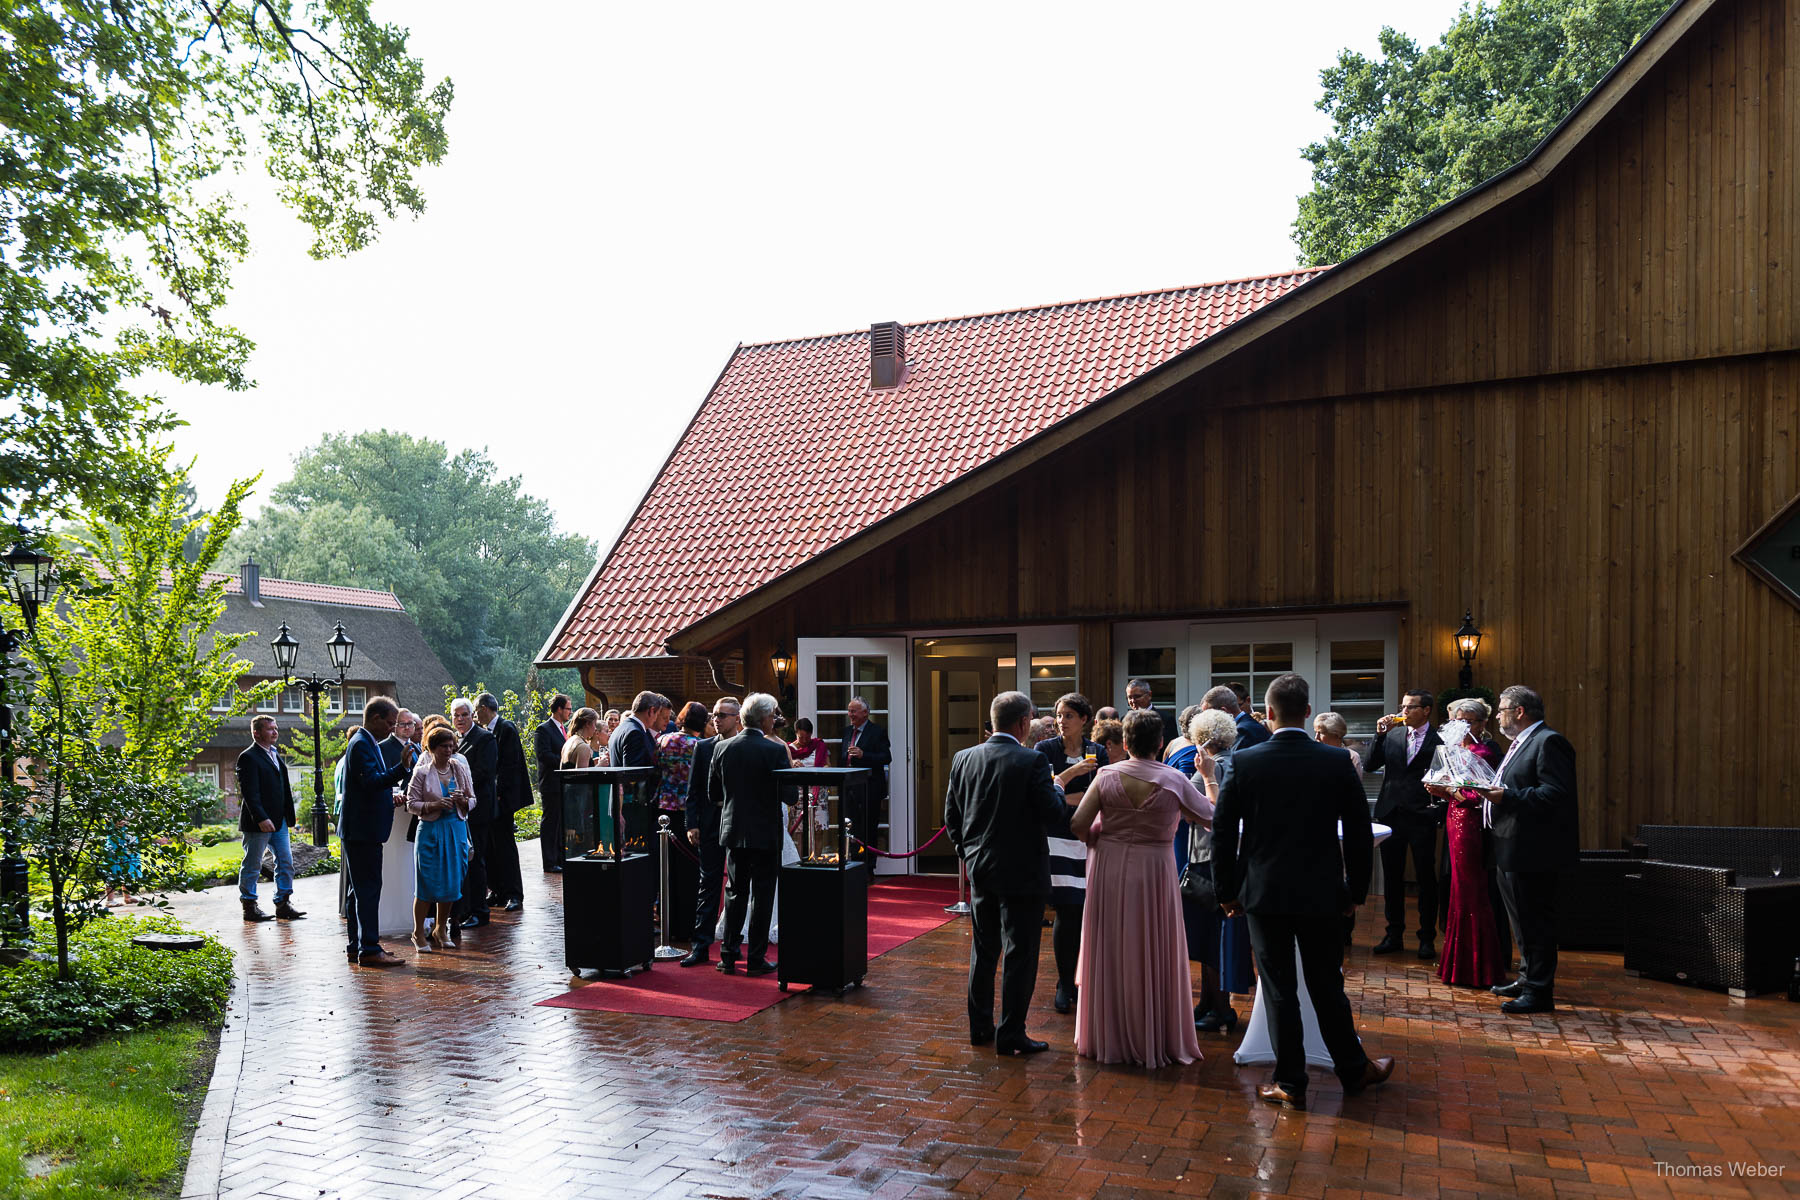 Hochzeitsempfang an der Bullmühle Visbek, Hochzeitsfotograf Thomas Weber